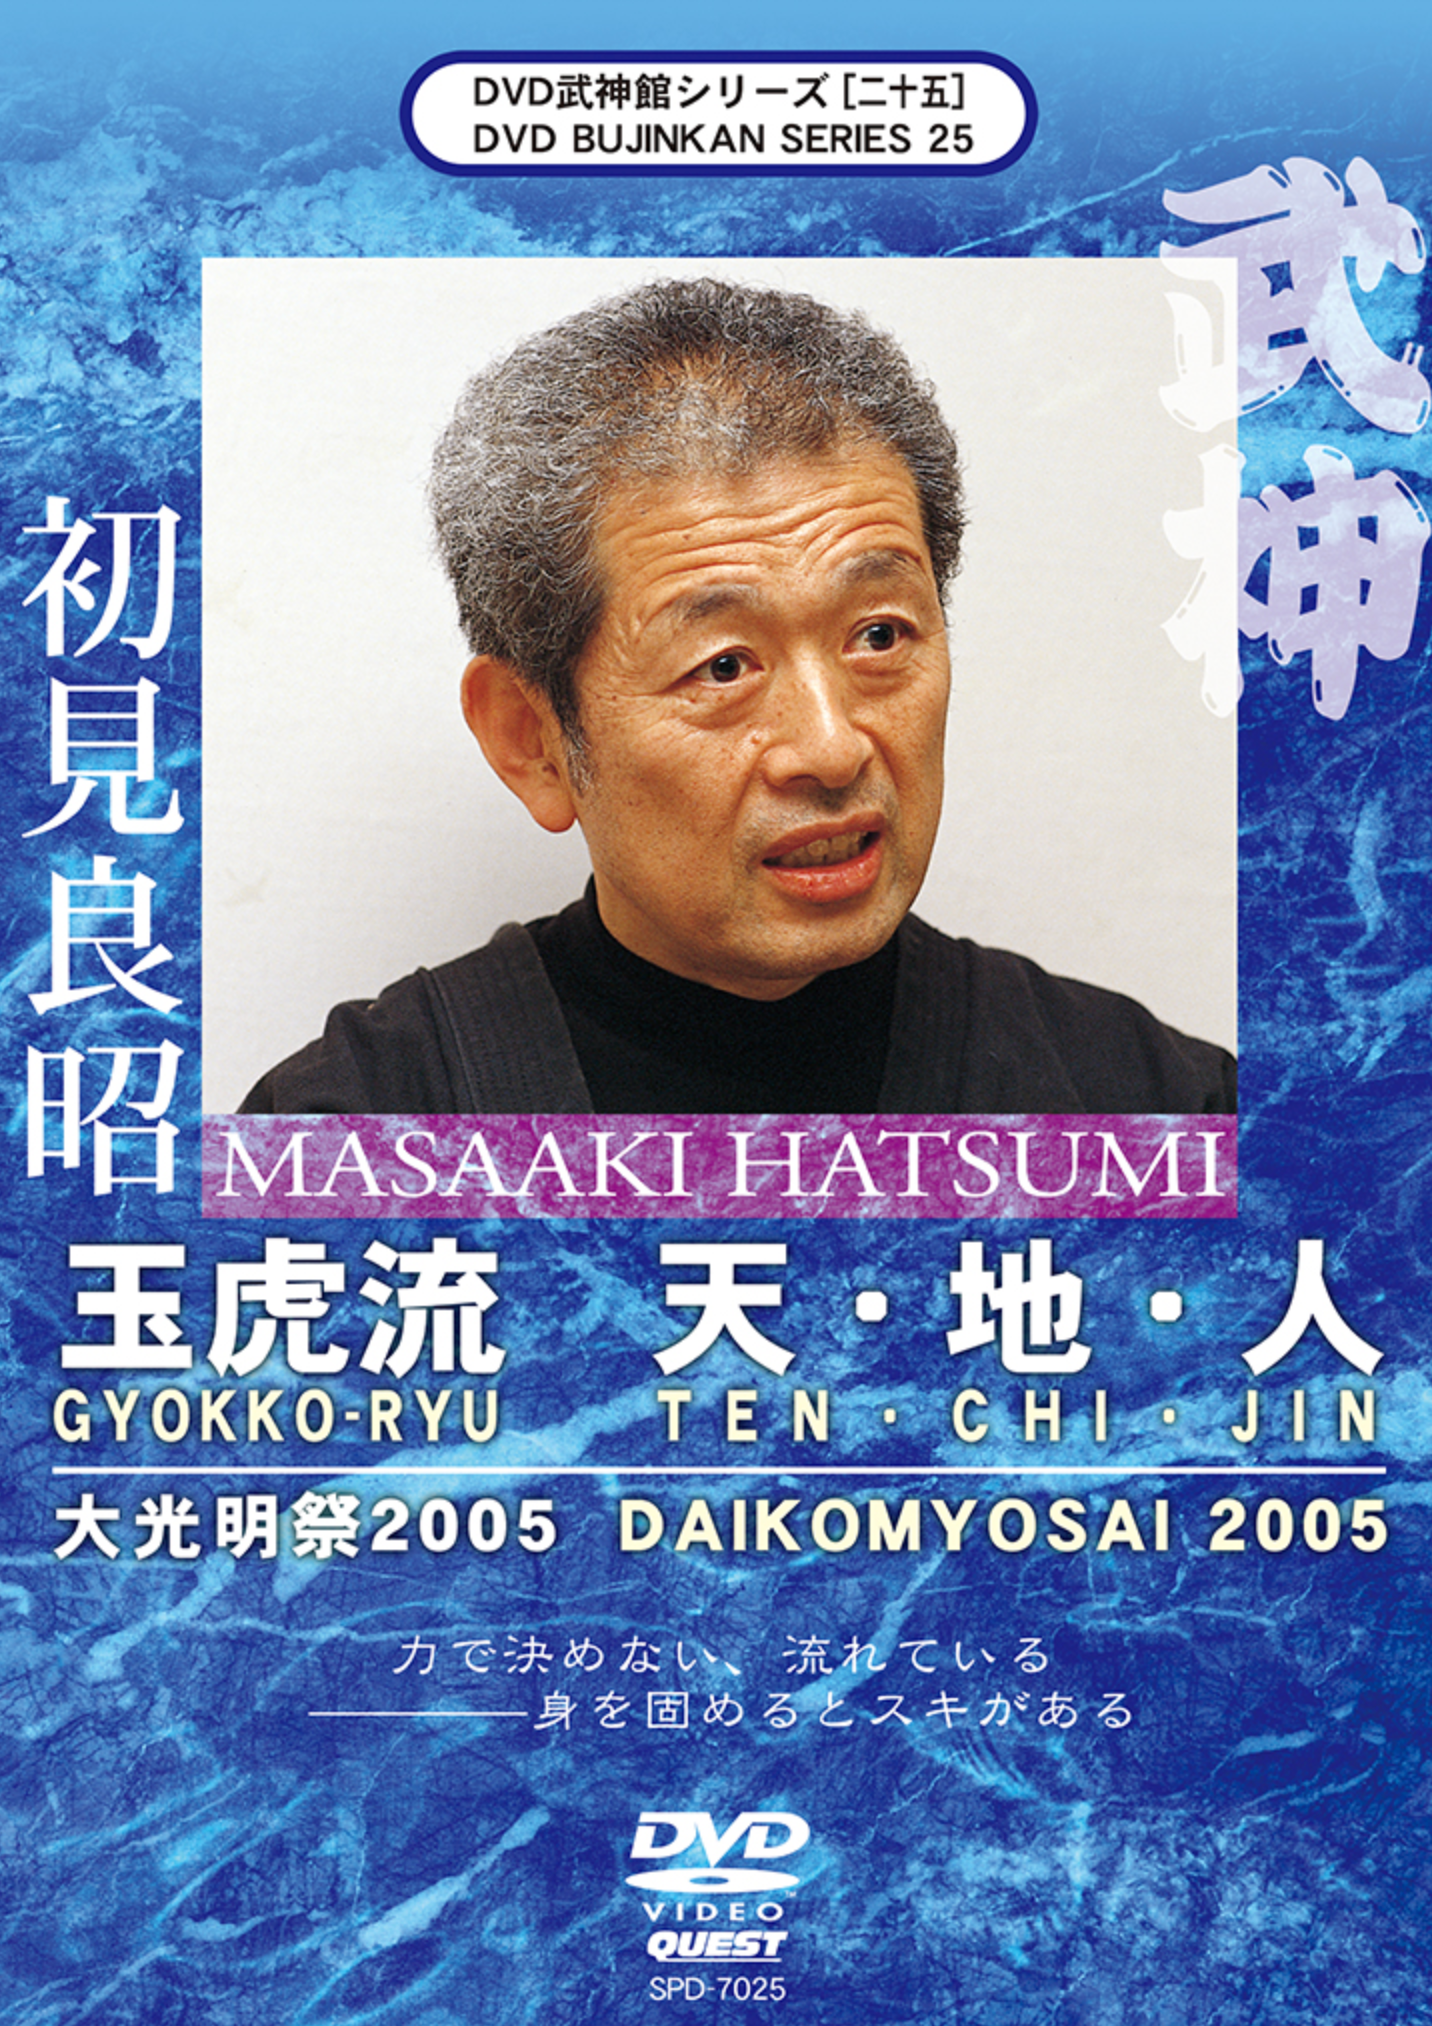 Bujinkan DVD Series 25: Gyokko Ryu Ten Chi Jin with Masaaki Hatsumi - Budovideos Inc